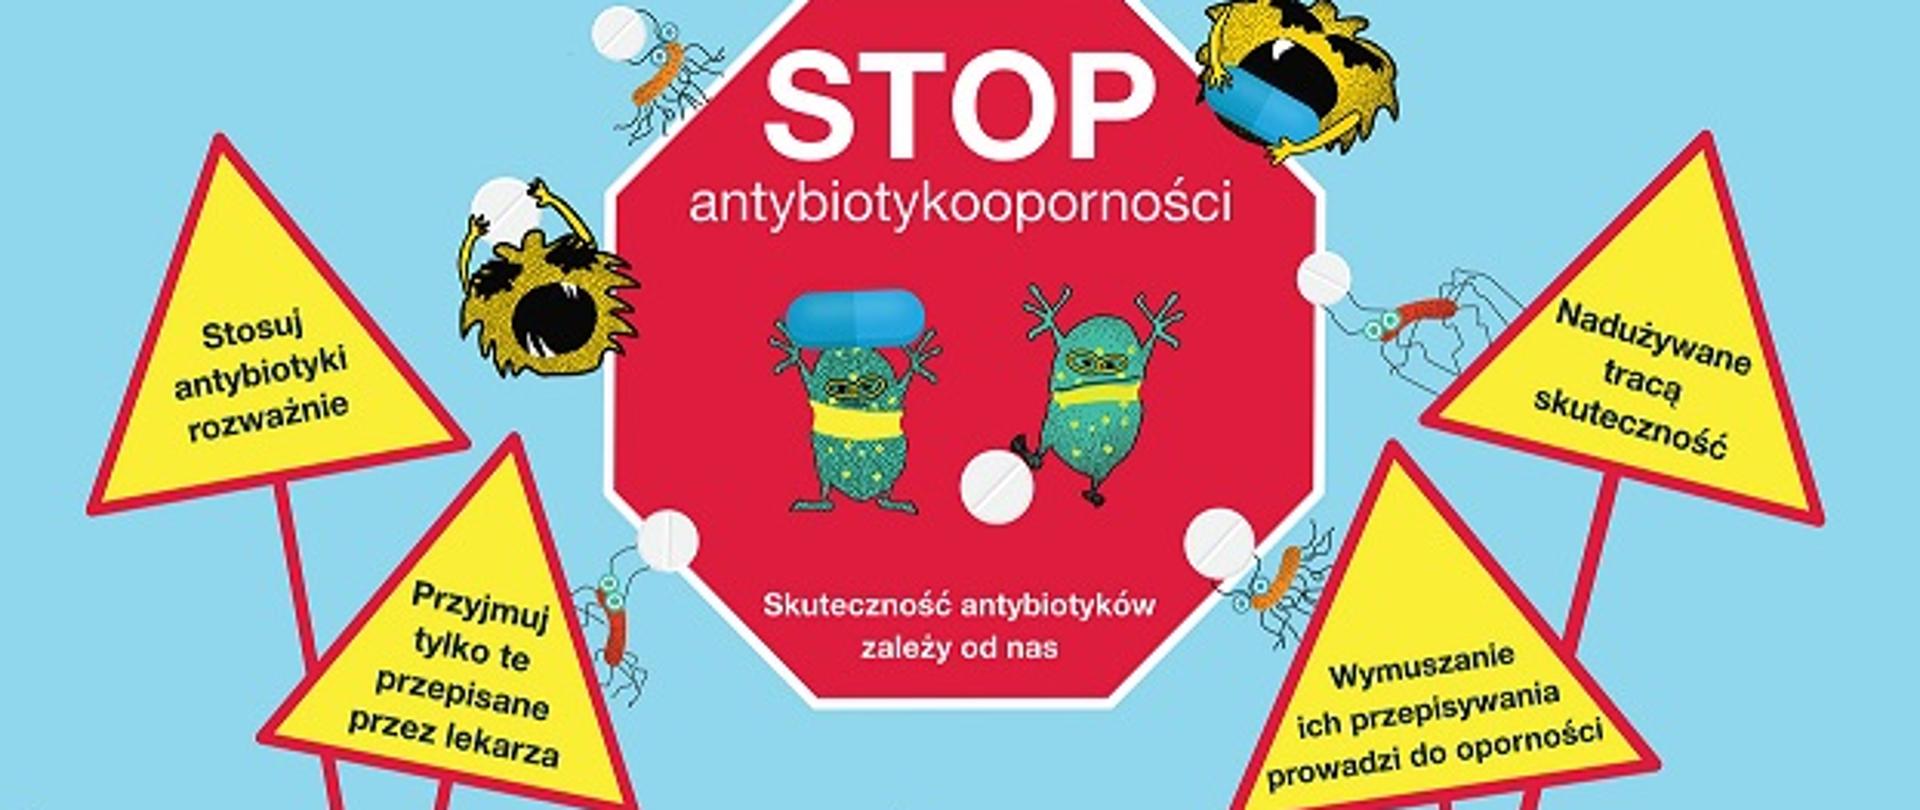 Opis fotografii: Część plakatu, na którym na błękitnym tle widać czerwony znak zakazu z białym napisem "Stop antybiotykkooporności. Skuteczność antybiotyków zależy od nas" i z obrazkami rysunkowych bakterii niosących jak mrówki tabletki. Poniżej 4 znaki ostrzegawcze (trójkąty żółte z czerwoną ramką) z napisami: 1. stosuj antybiotyki rozważnie. 2. Przyjmuj tylko te przepisane przez lekarza. 3. nadużywane tracą skuteczność. 4. Wymuszanie ich przepisywania prowadzi do oporności. 